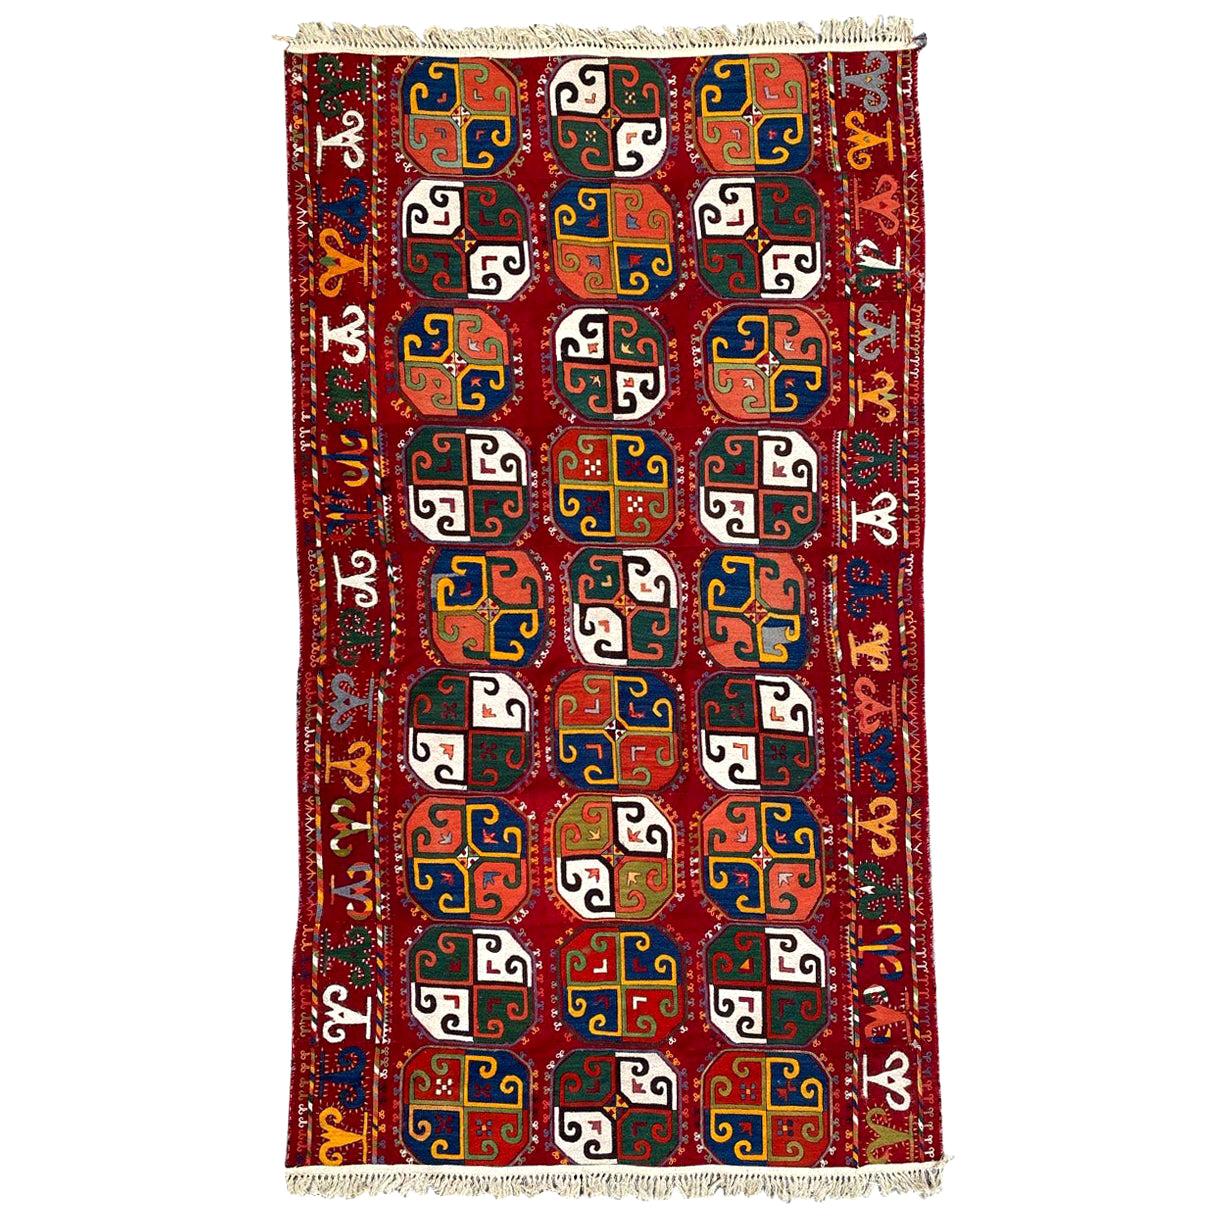 Bobyrug's Wonderful Antique Uzbek Woven and Embroidered Panel (Panneau ancien tissé et brodé ouzbek)